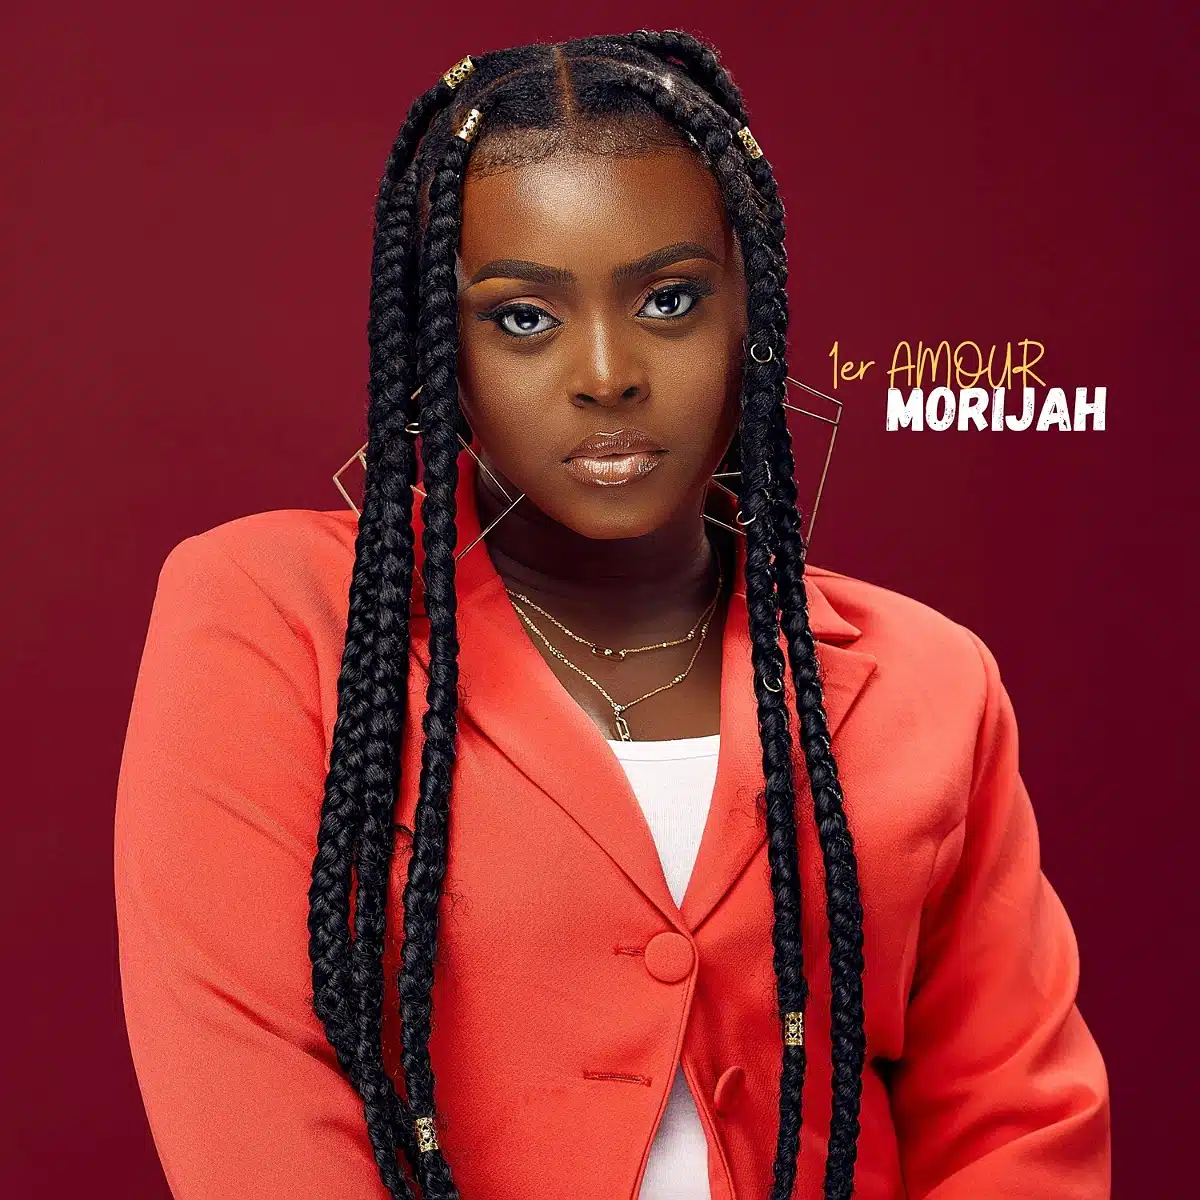 DOWNLOAD: Morijah – “1er amour” | Full Album